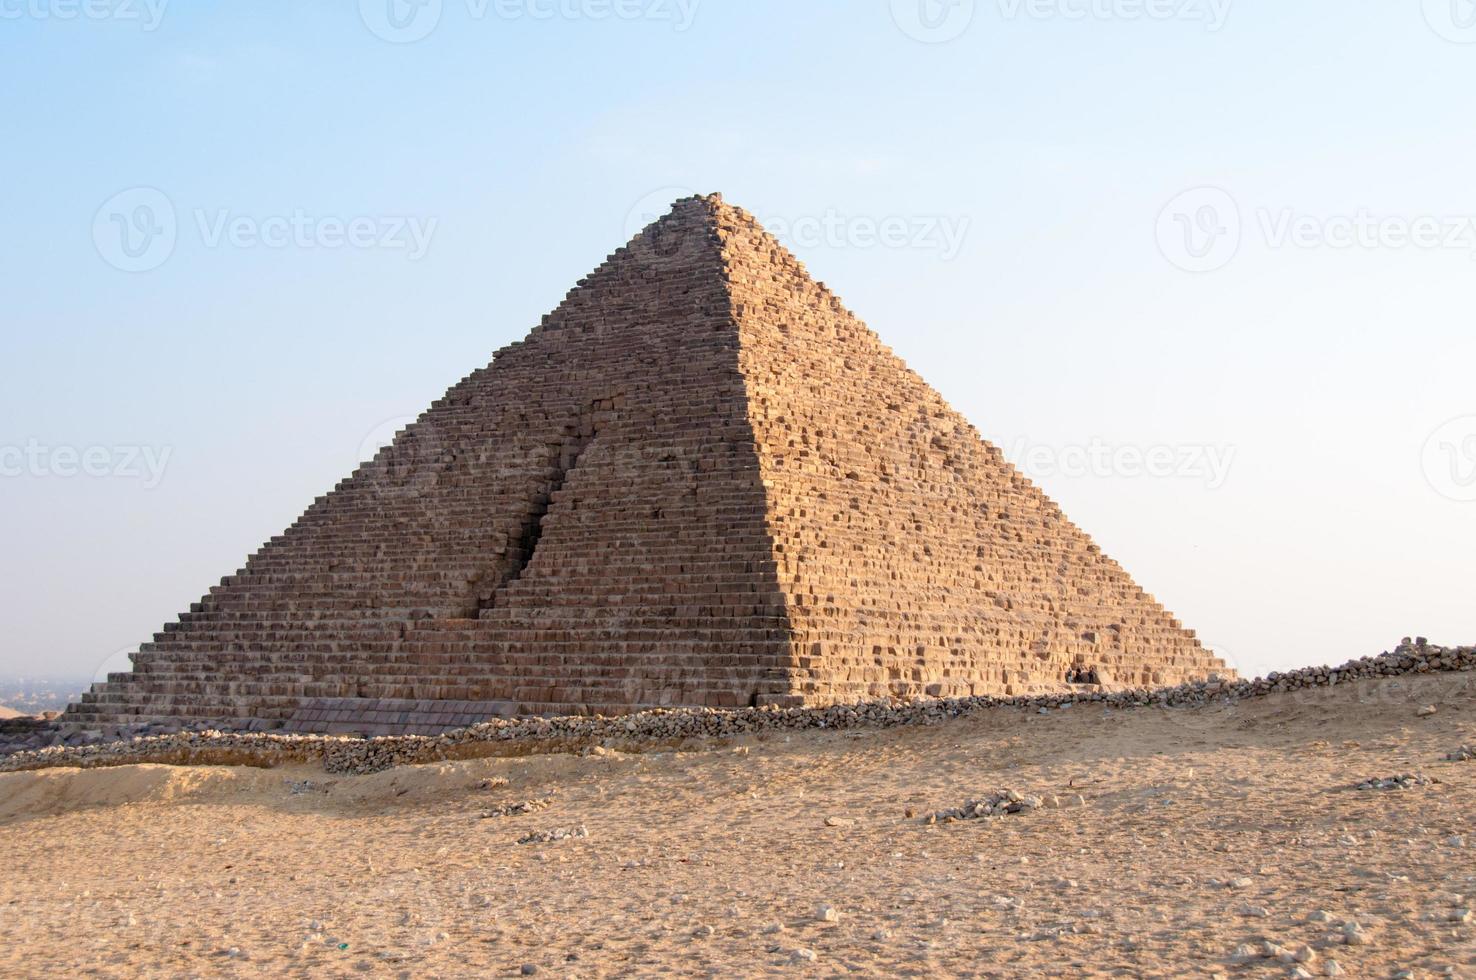 pirâmides egípcias do planalto de gizé, cairo foto